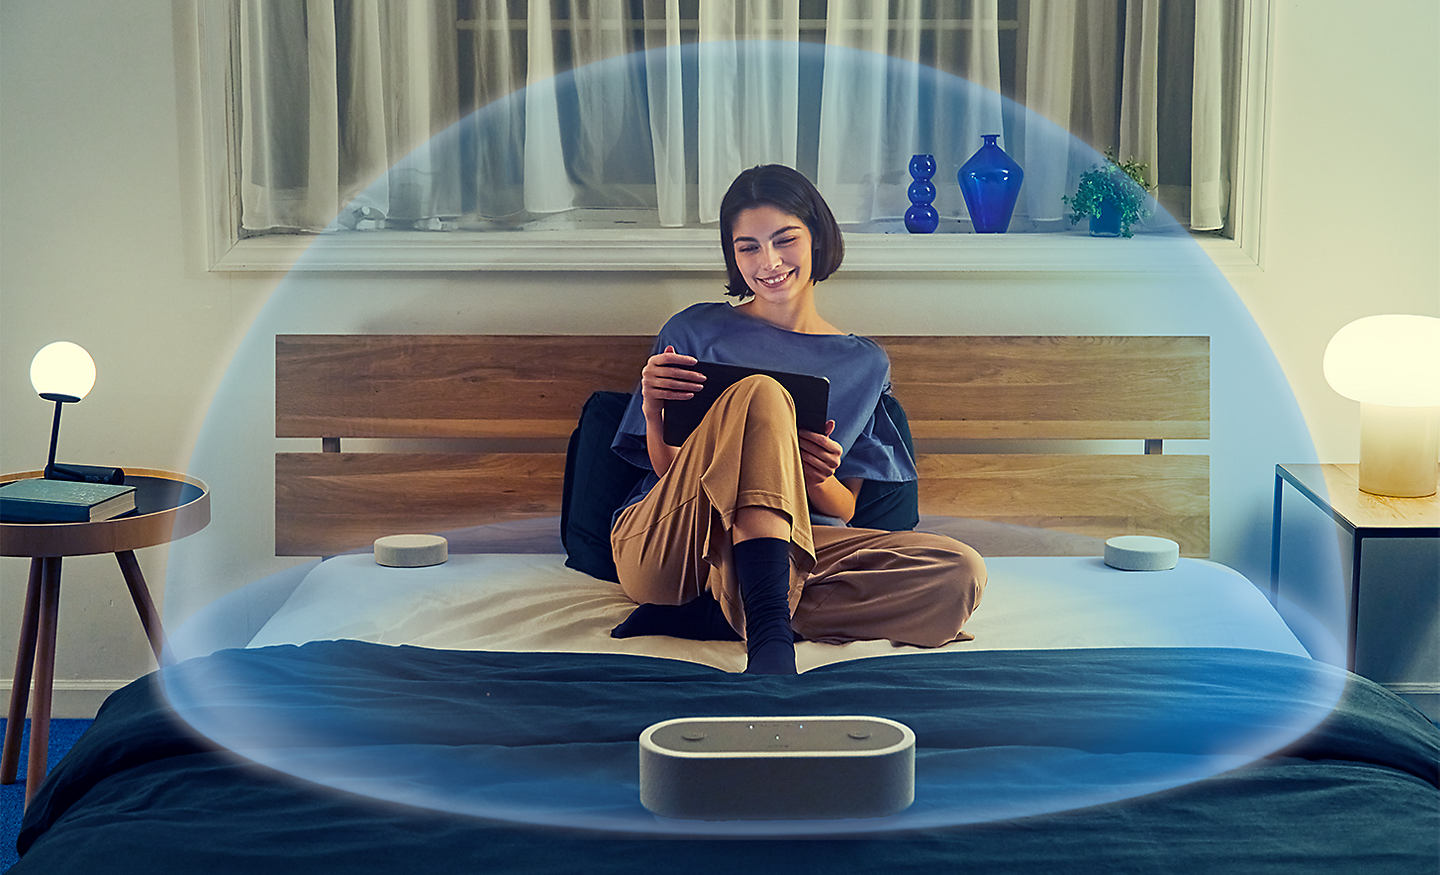 Image d'une personne assise sur un lit, entourée du système HT-AX7 avec une bulle transparente représentant le son spatial qui enveloppe la personne